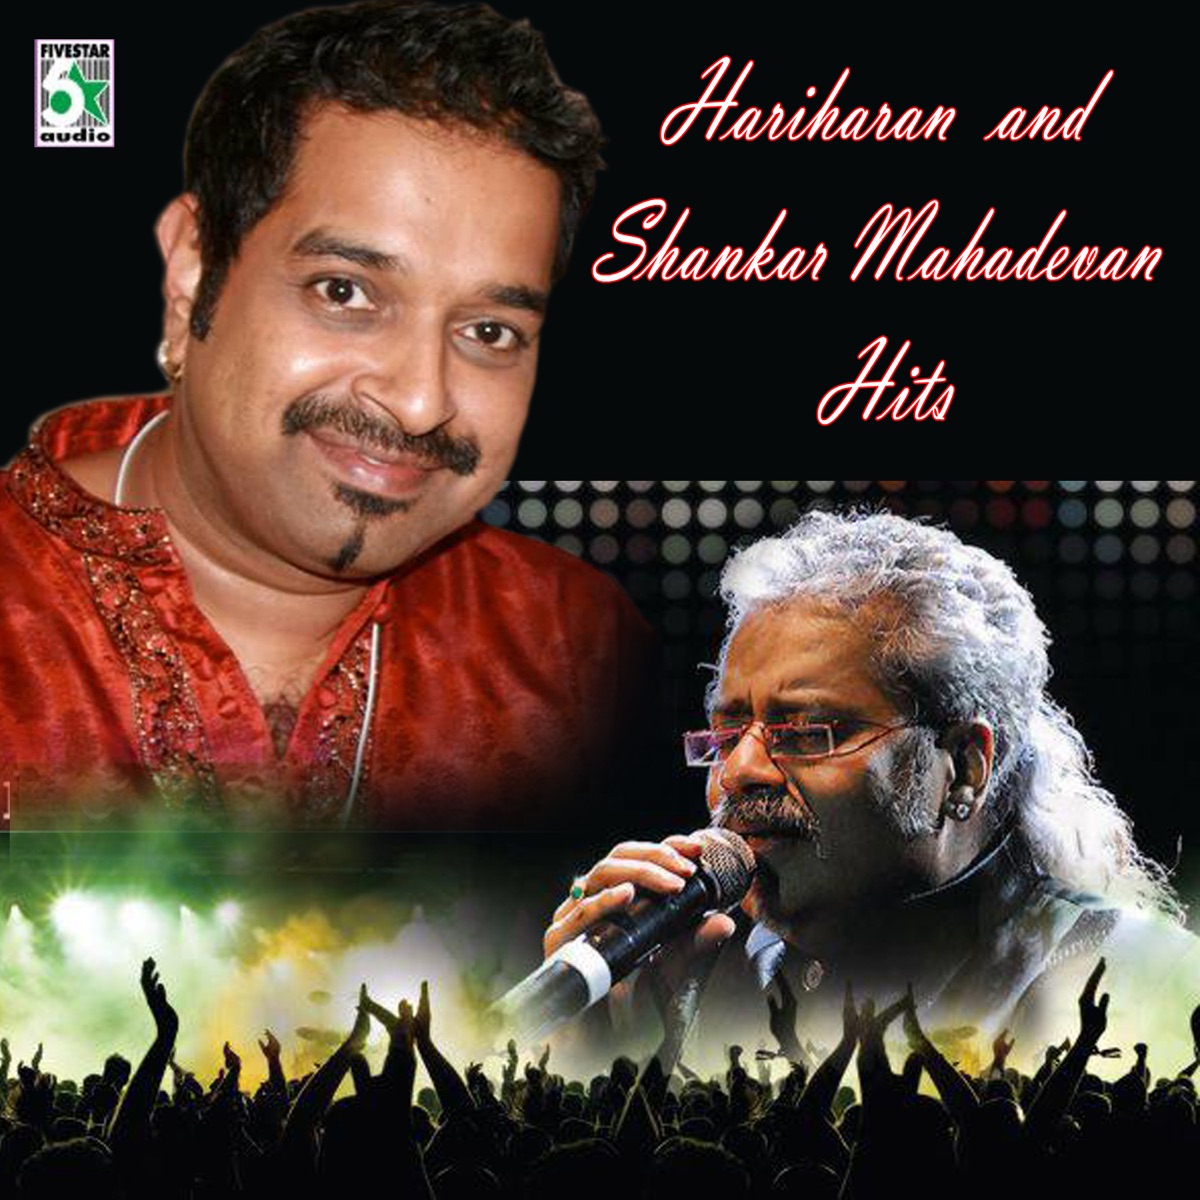 Hariharan and Shankar Mahadevan Hits - Album by Hariharan & Shankar  Mahadevan - Apple Music